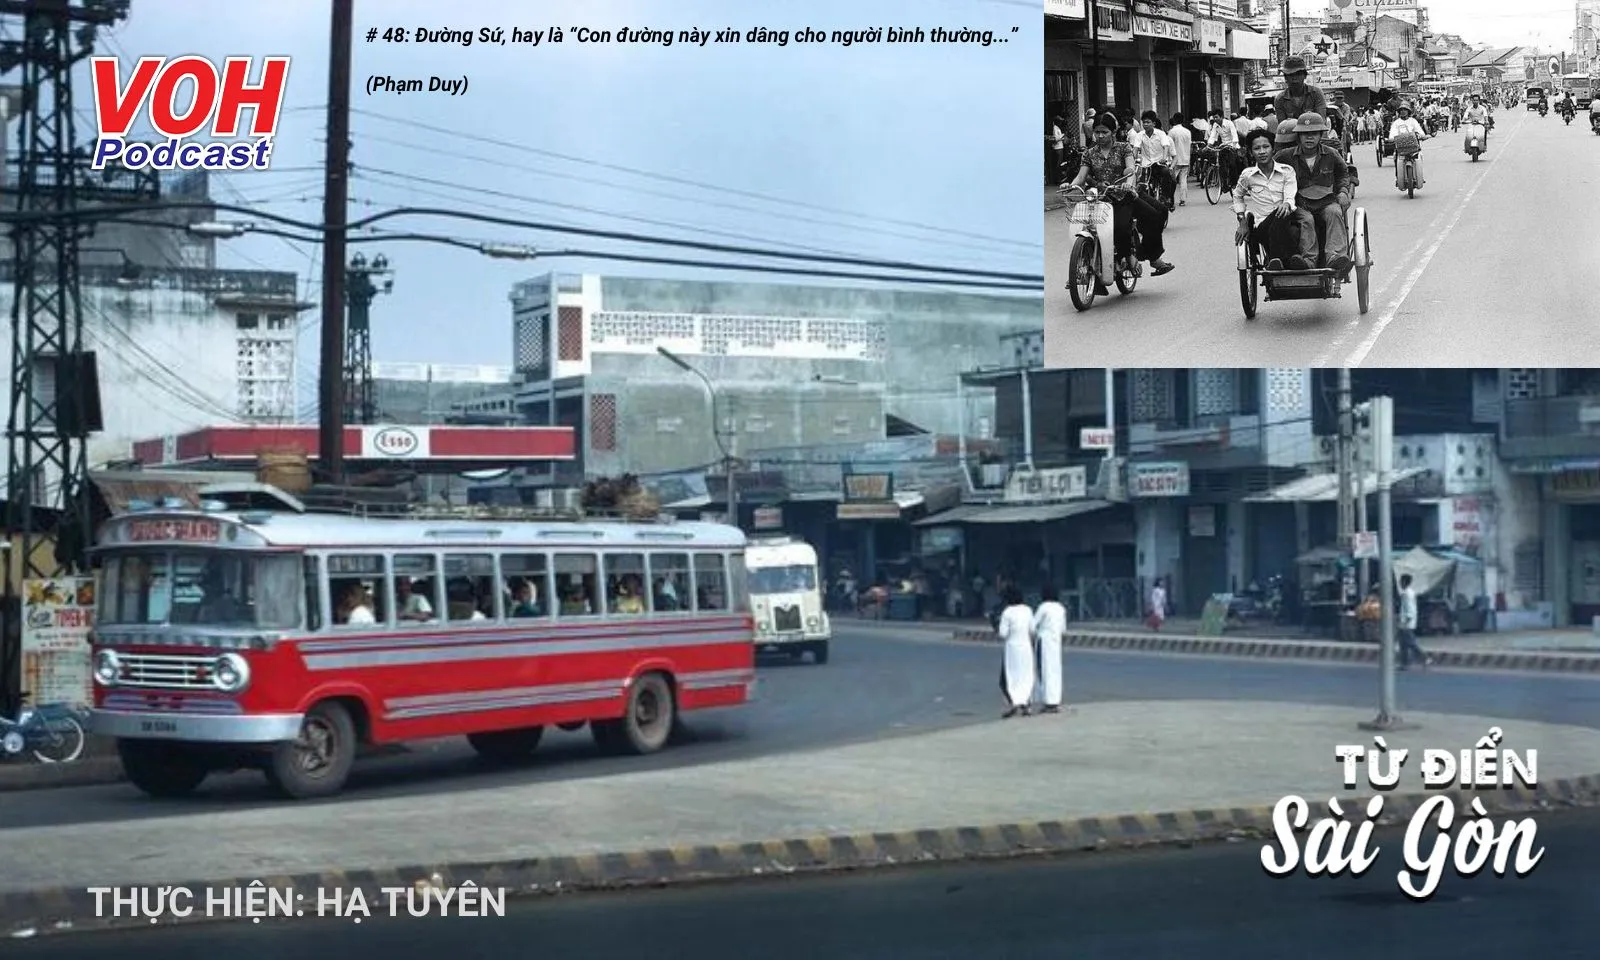 #48: Con đường nhiều tên nhất Sài Gòn